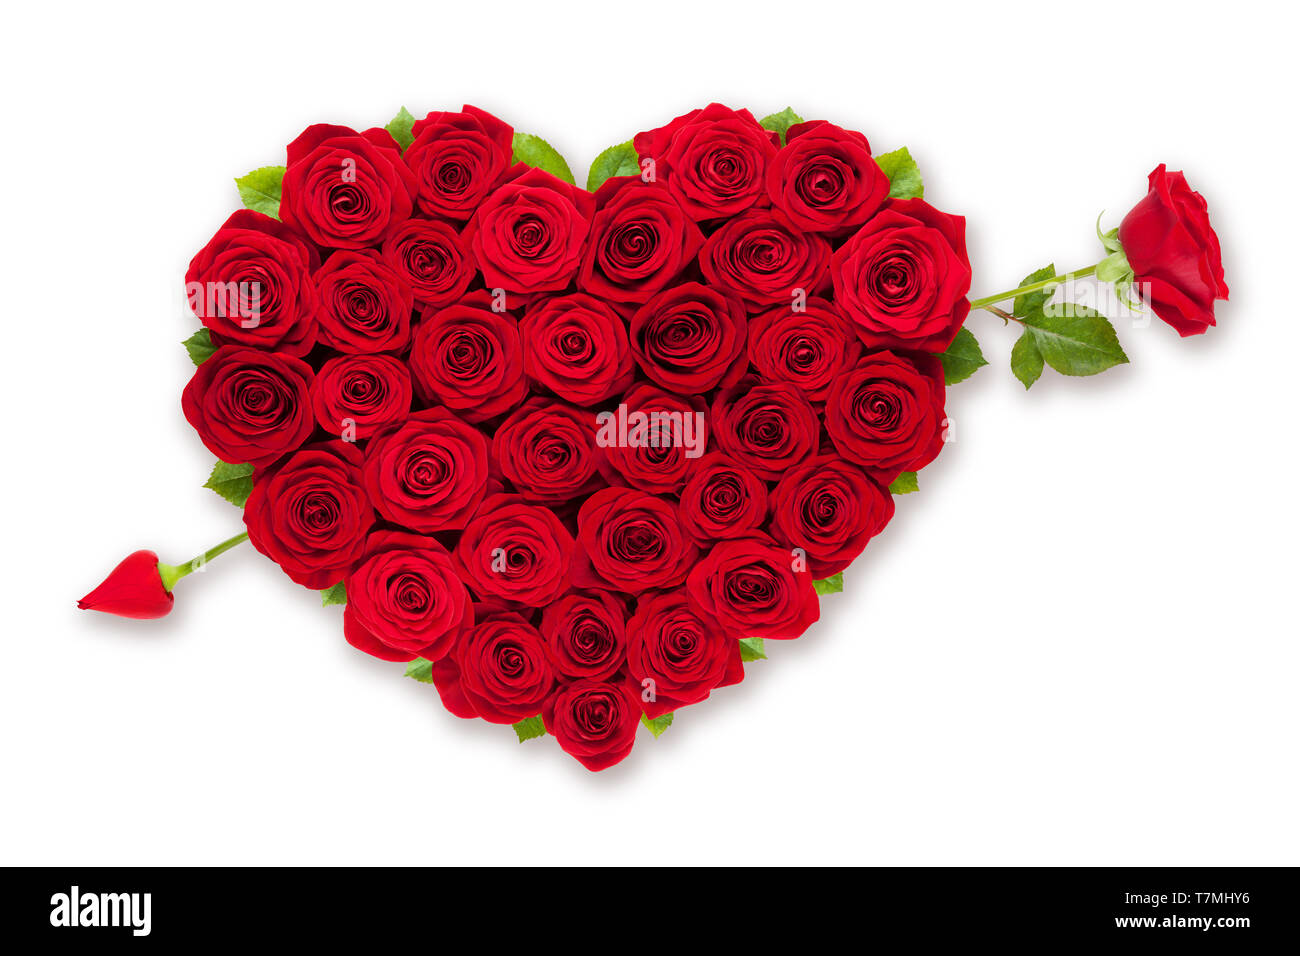 Rote Rosen Herz mit rose Pfeil auf weißem Hintergrund Stockfotografie -  Alamy